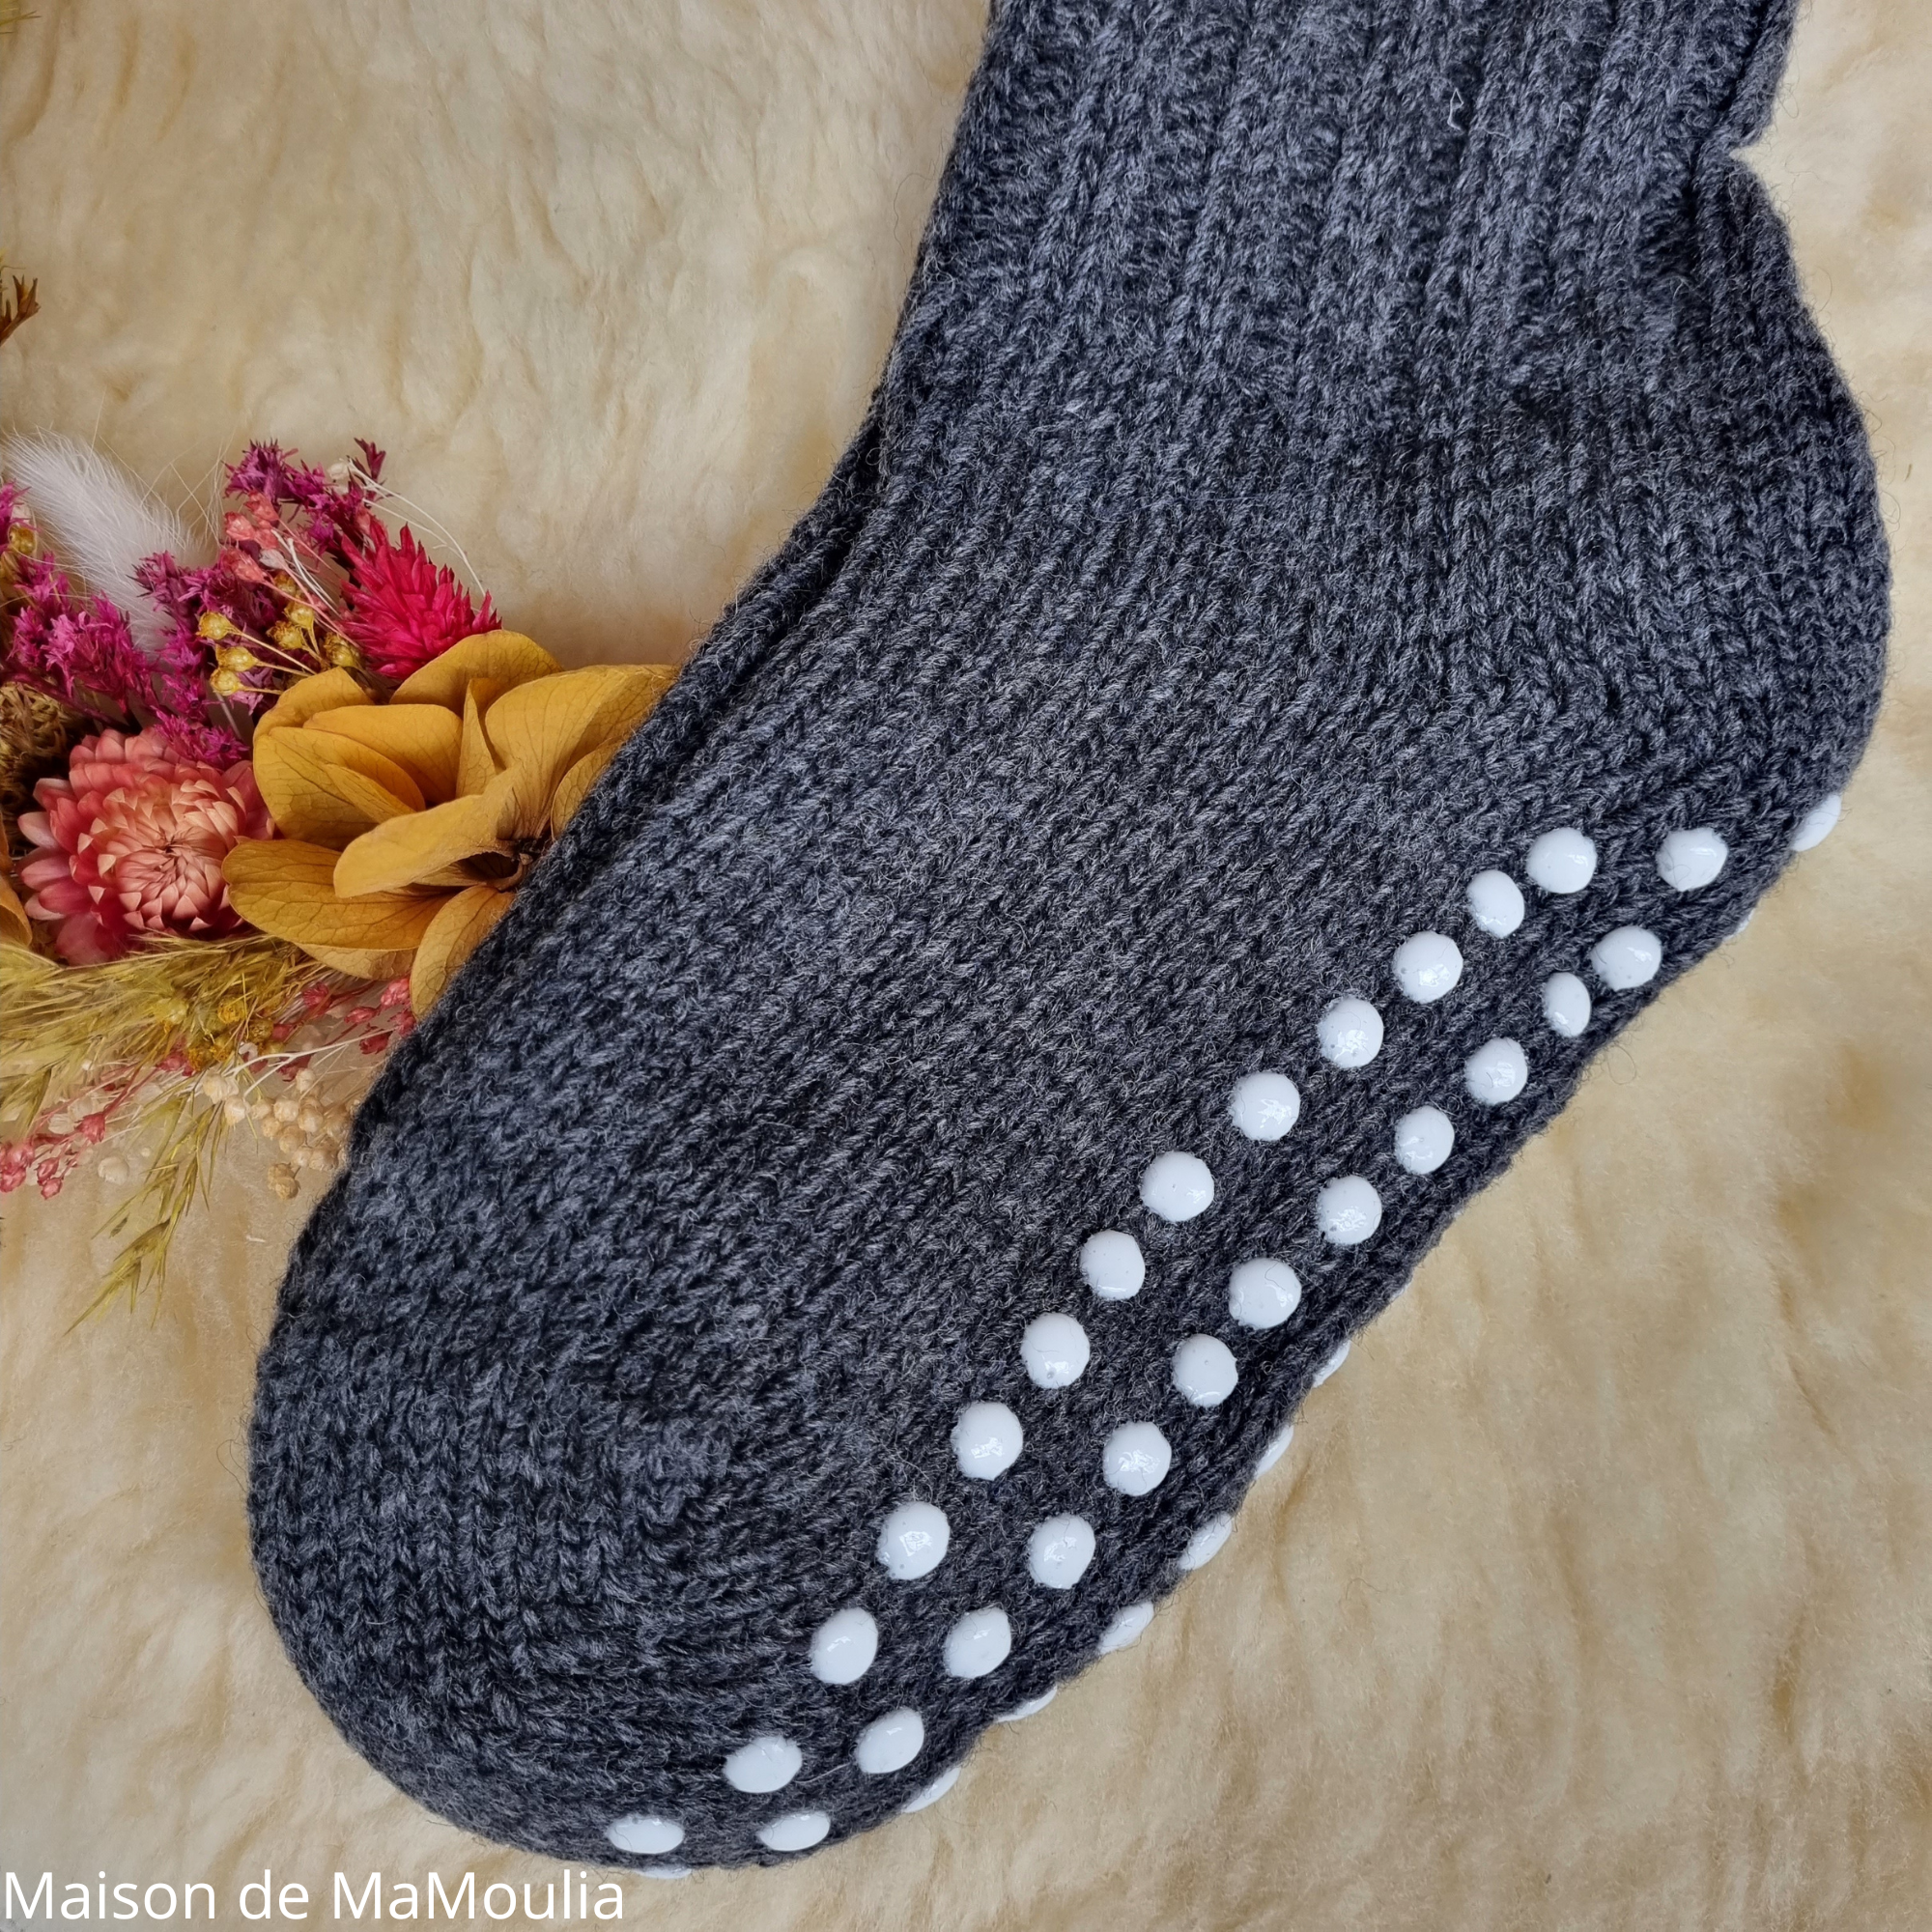 091-chaussettes-antiderapantes-adulte-pure-laine-bio-ecologique-hirsch-natur-maison-de-mamoulia-noir- anthracite